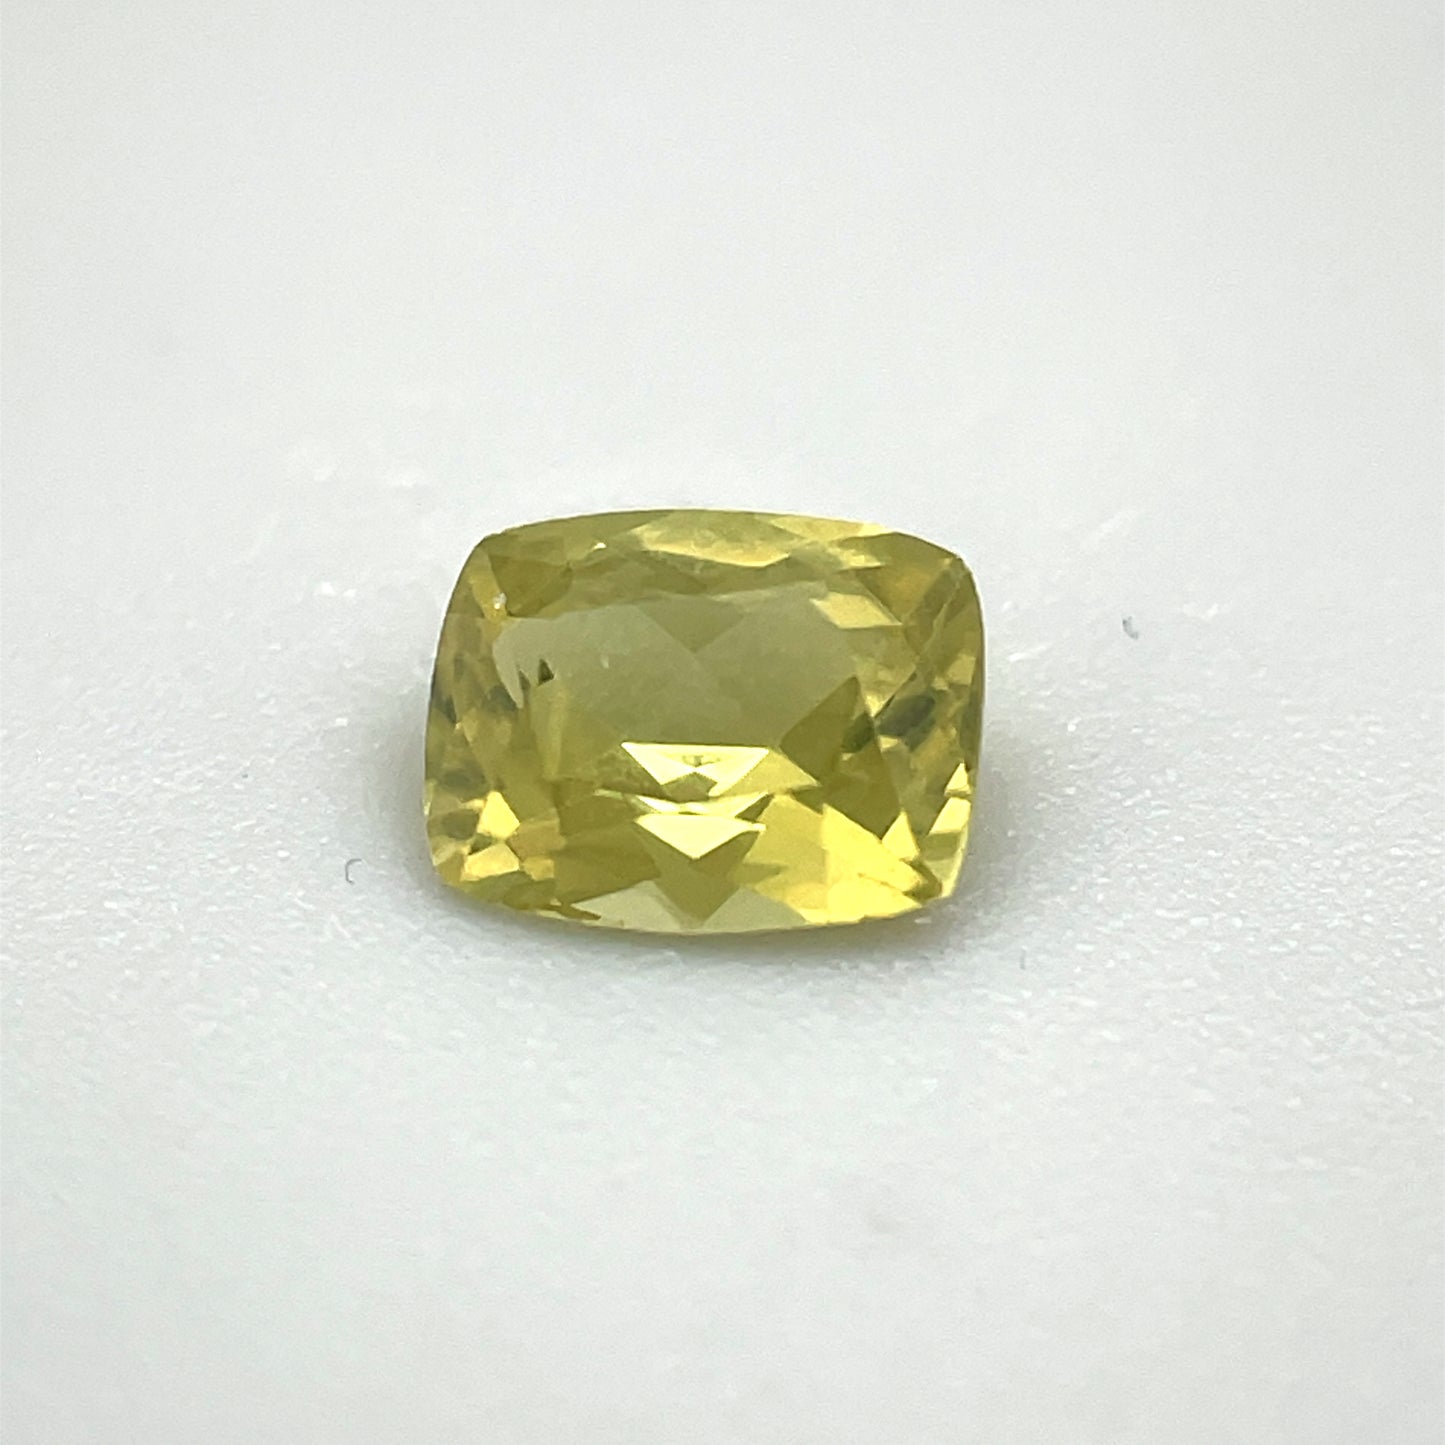 Saphir, Gelb, Kissen, 0,52 ct., 5,3x4,2x2,6 mm